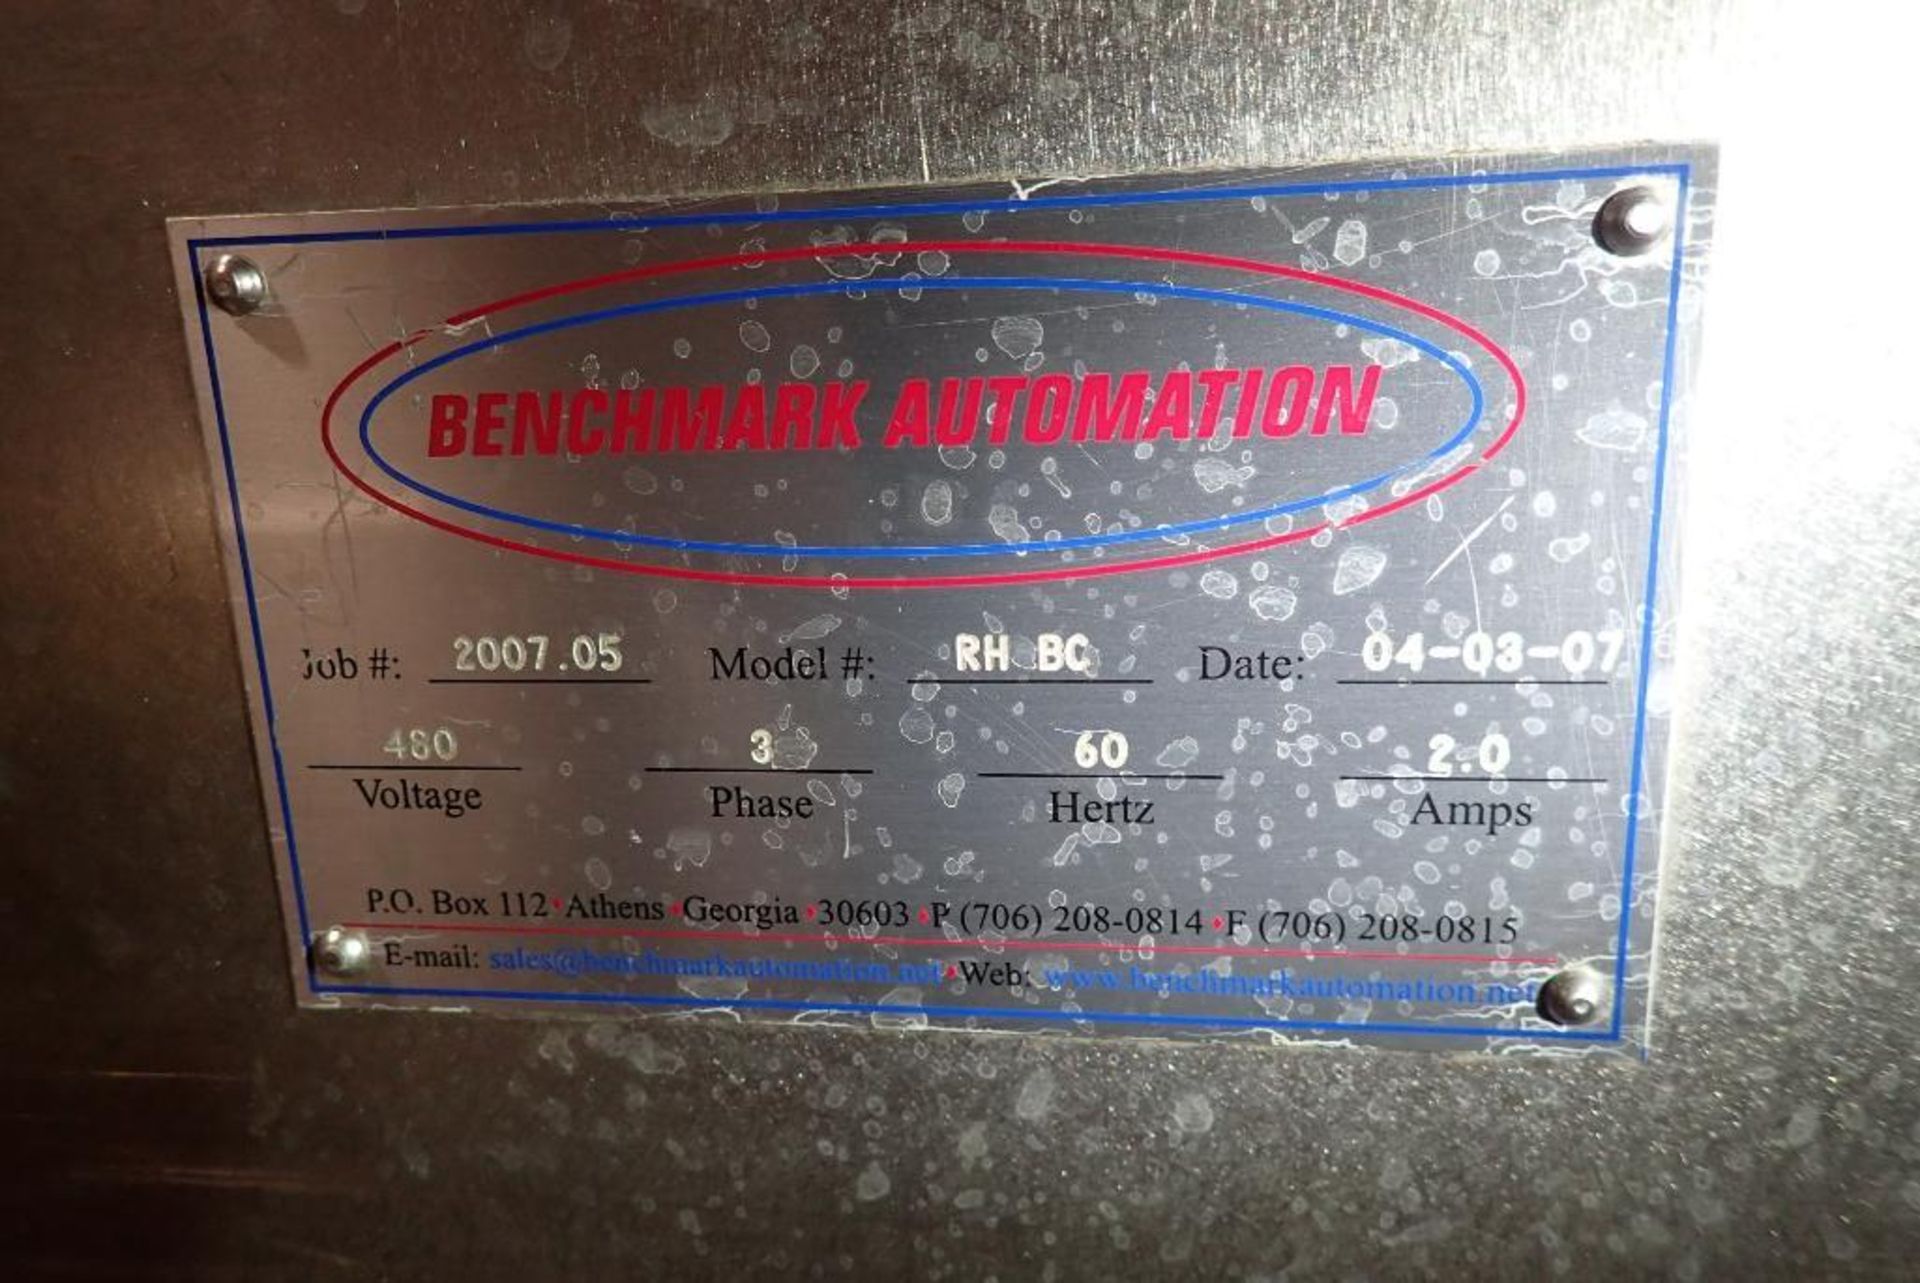 2007 Benchmark Automation belt conveyor - Image 8 of 9